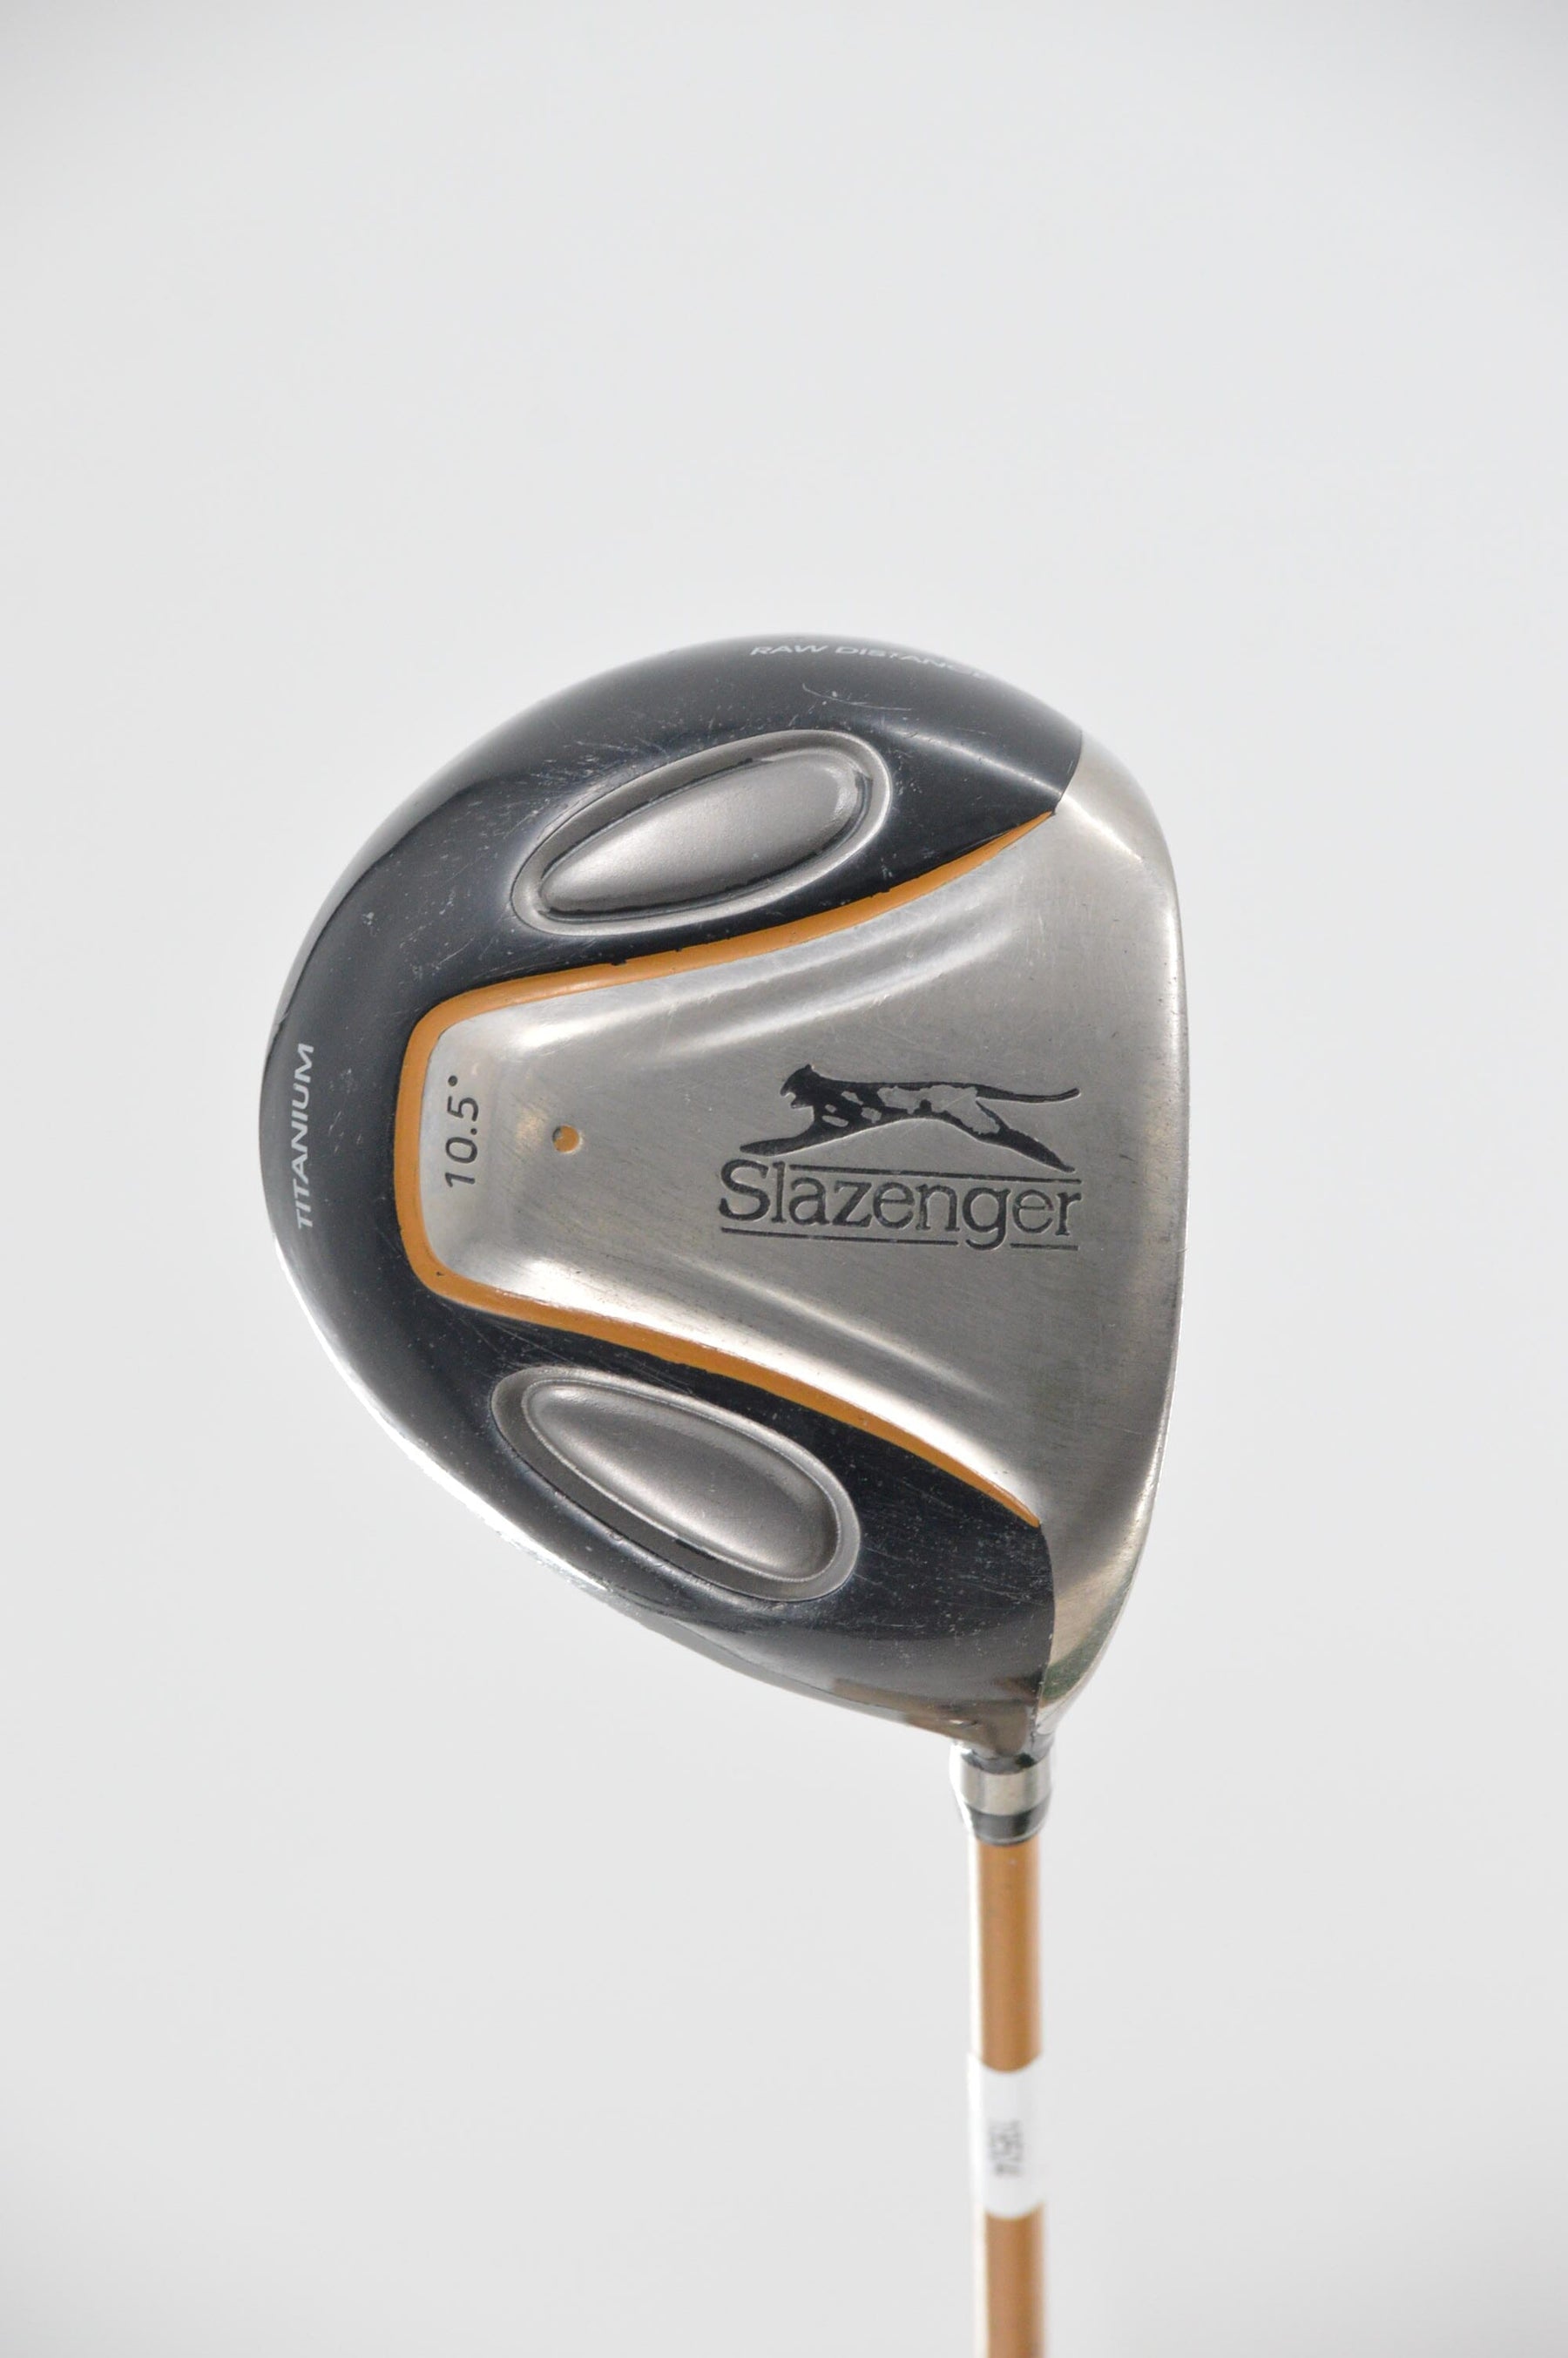 Slazenger Raw Distance 10.5 Degree Driver R Flex 45.25" Golf Clubs GolfRoots 